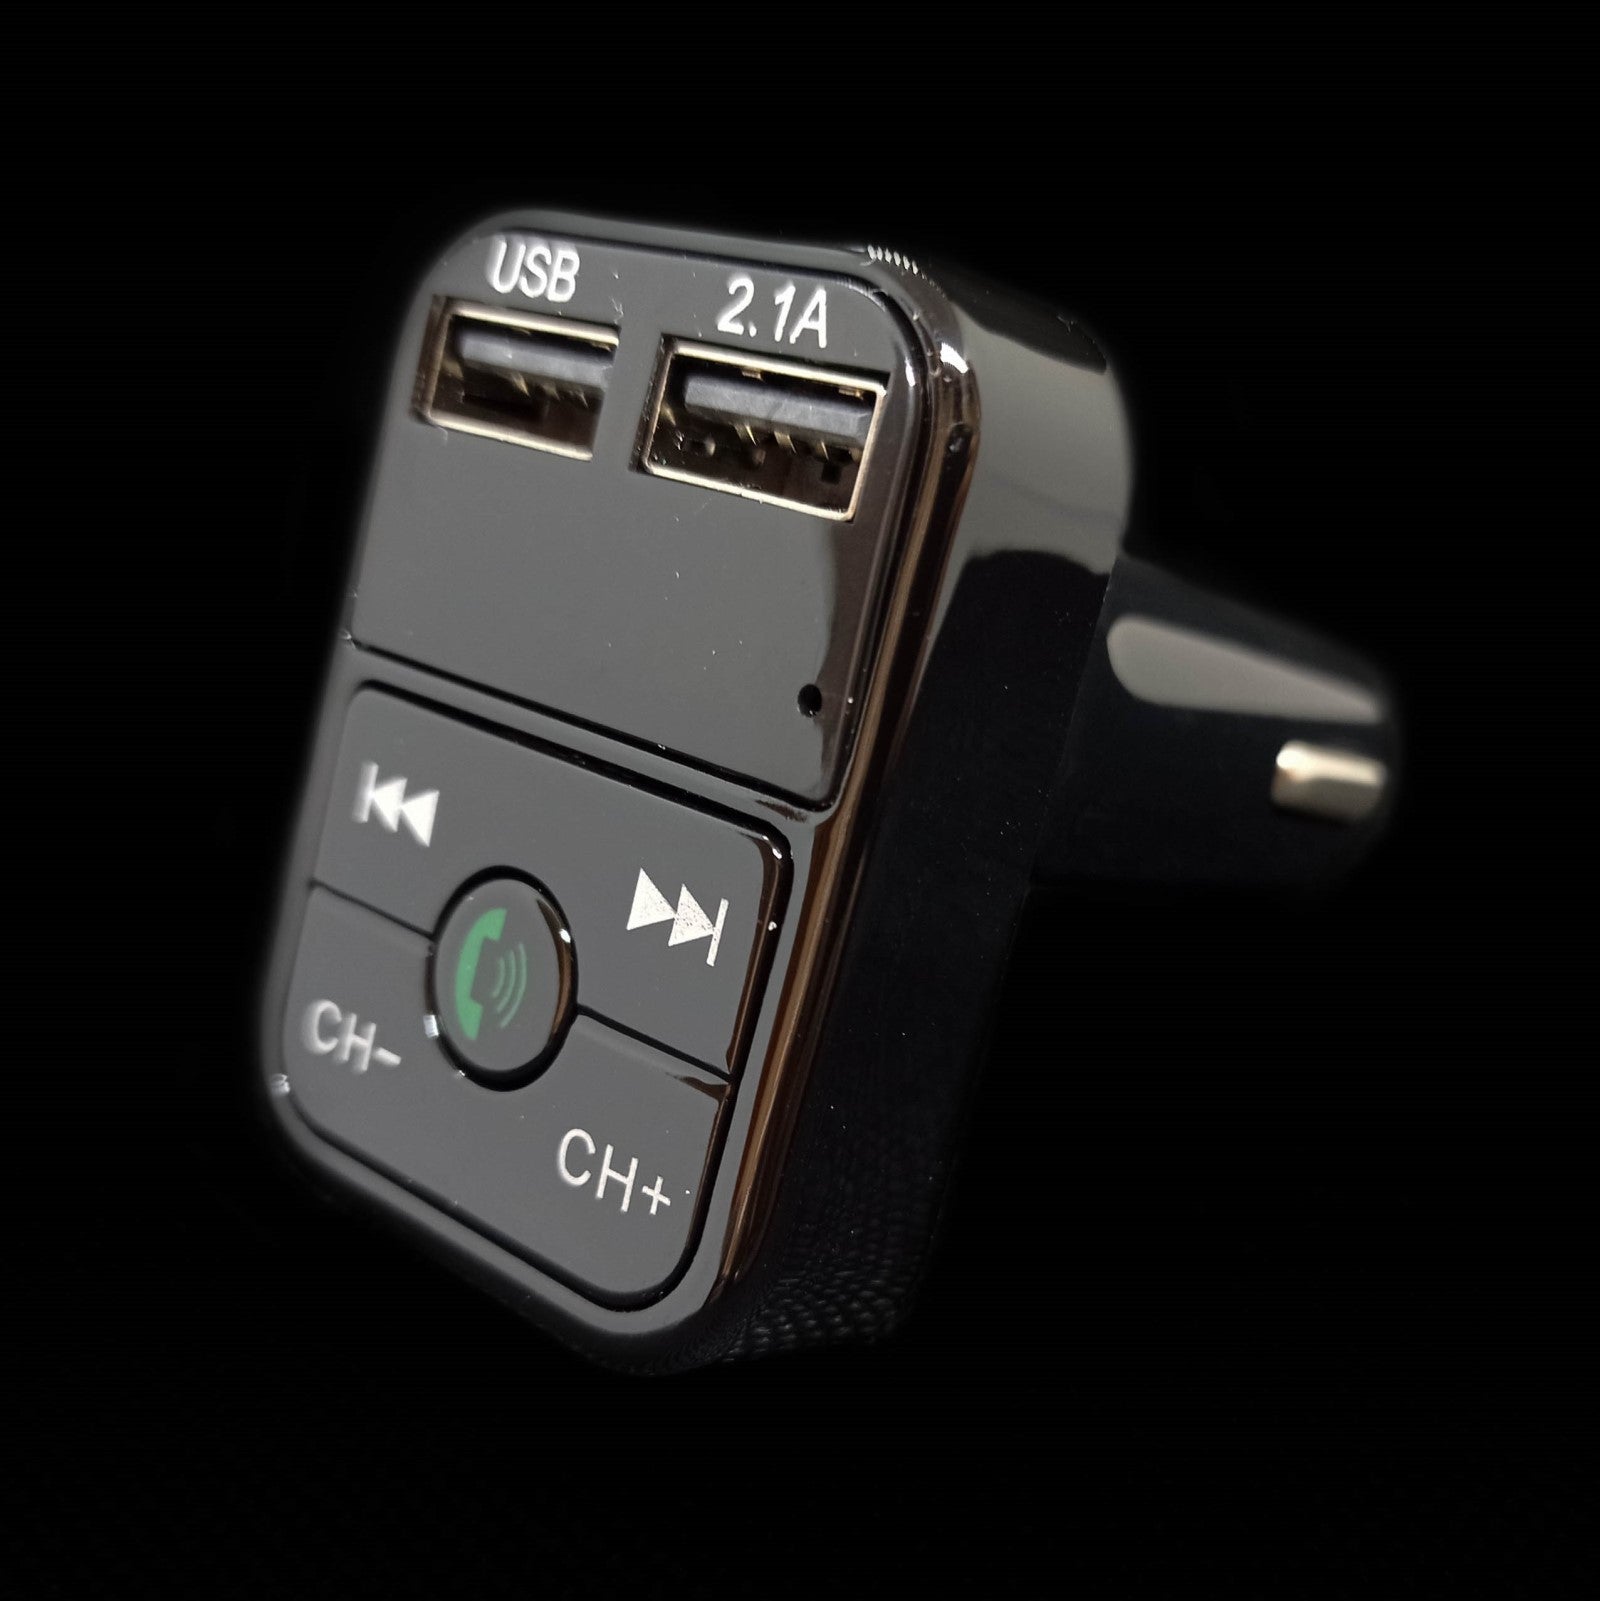 Transmissor Bluetooth para carro com ligação isqueiro, vista lateral do produto com ligações USB e botões de controlo